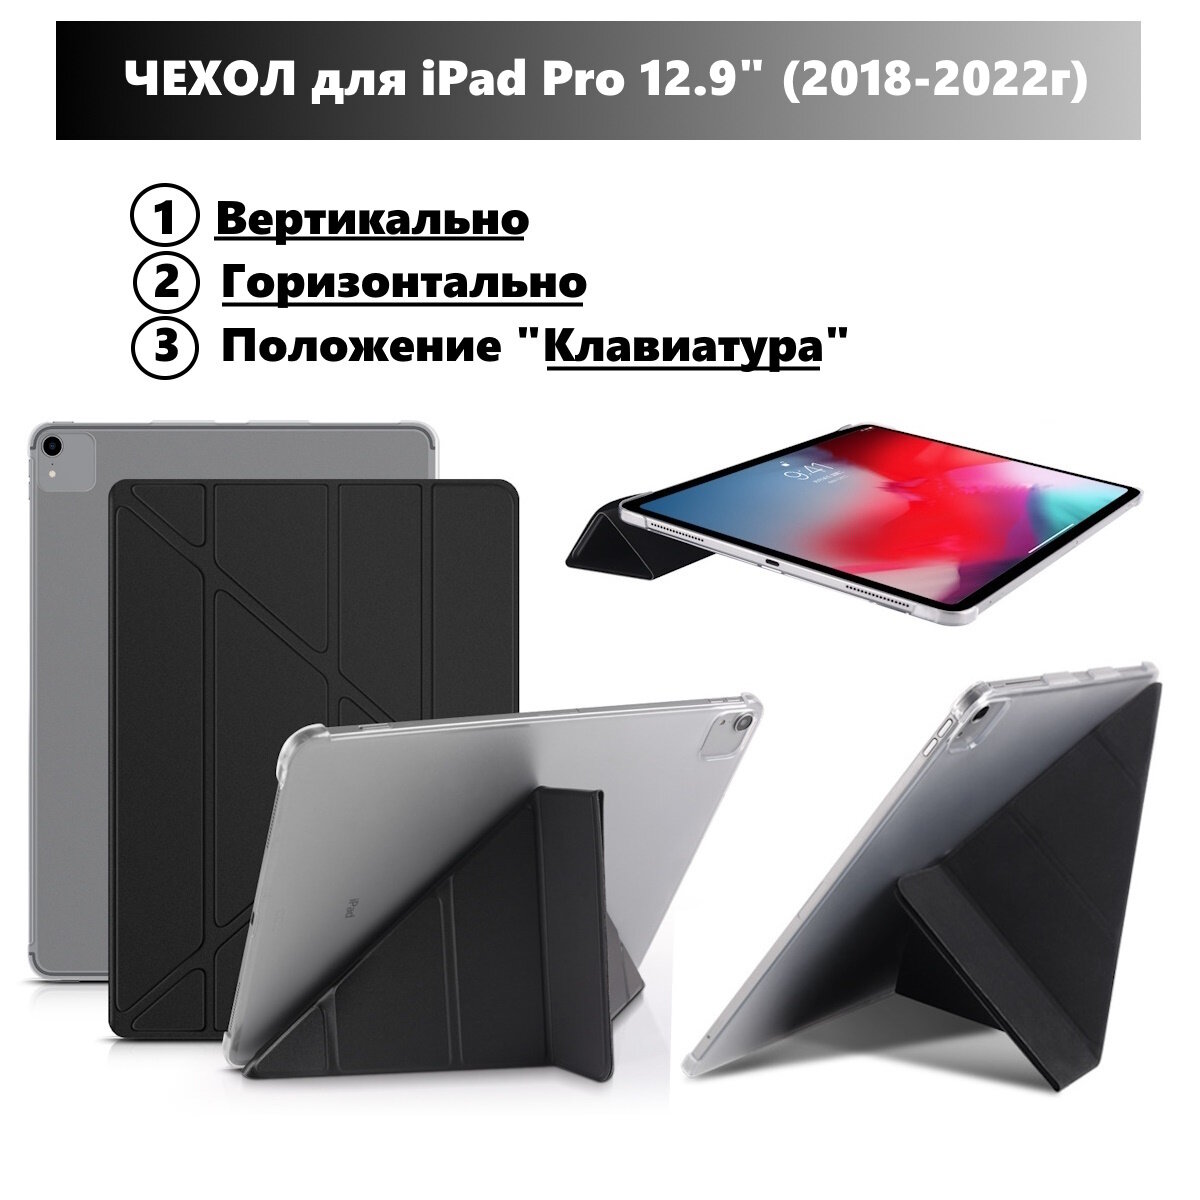 Чехол для iPad Pro 12.9 (2018-2022гг) горизонтальный и вертикальный умный чехол-подставка для iPad, с местом для стилуса, Чёрный